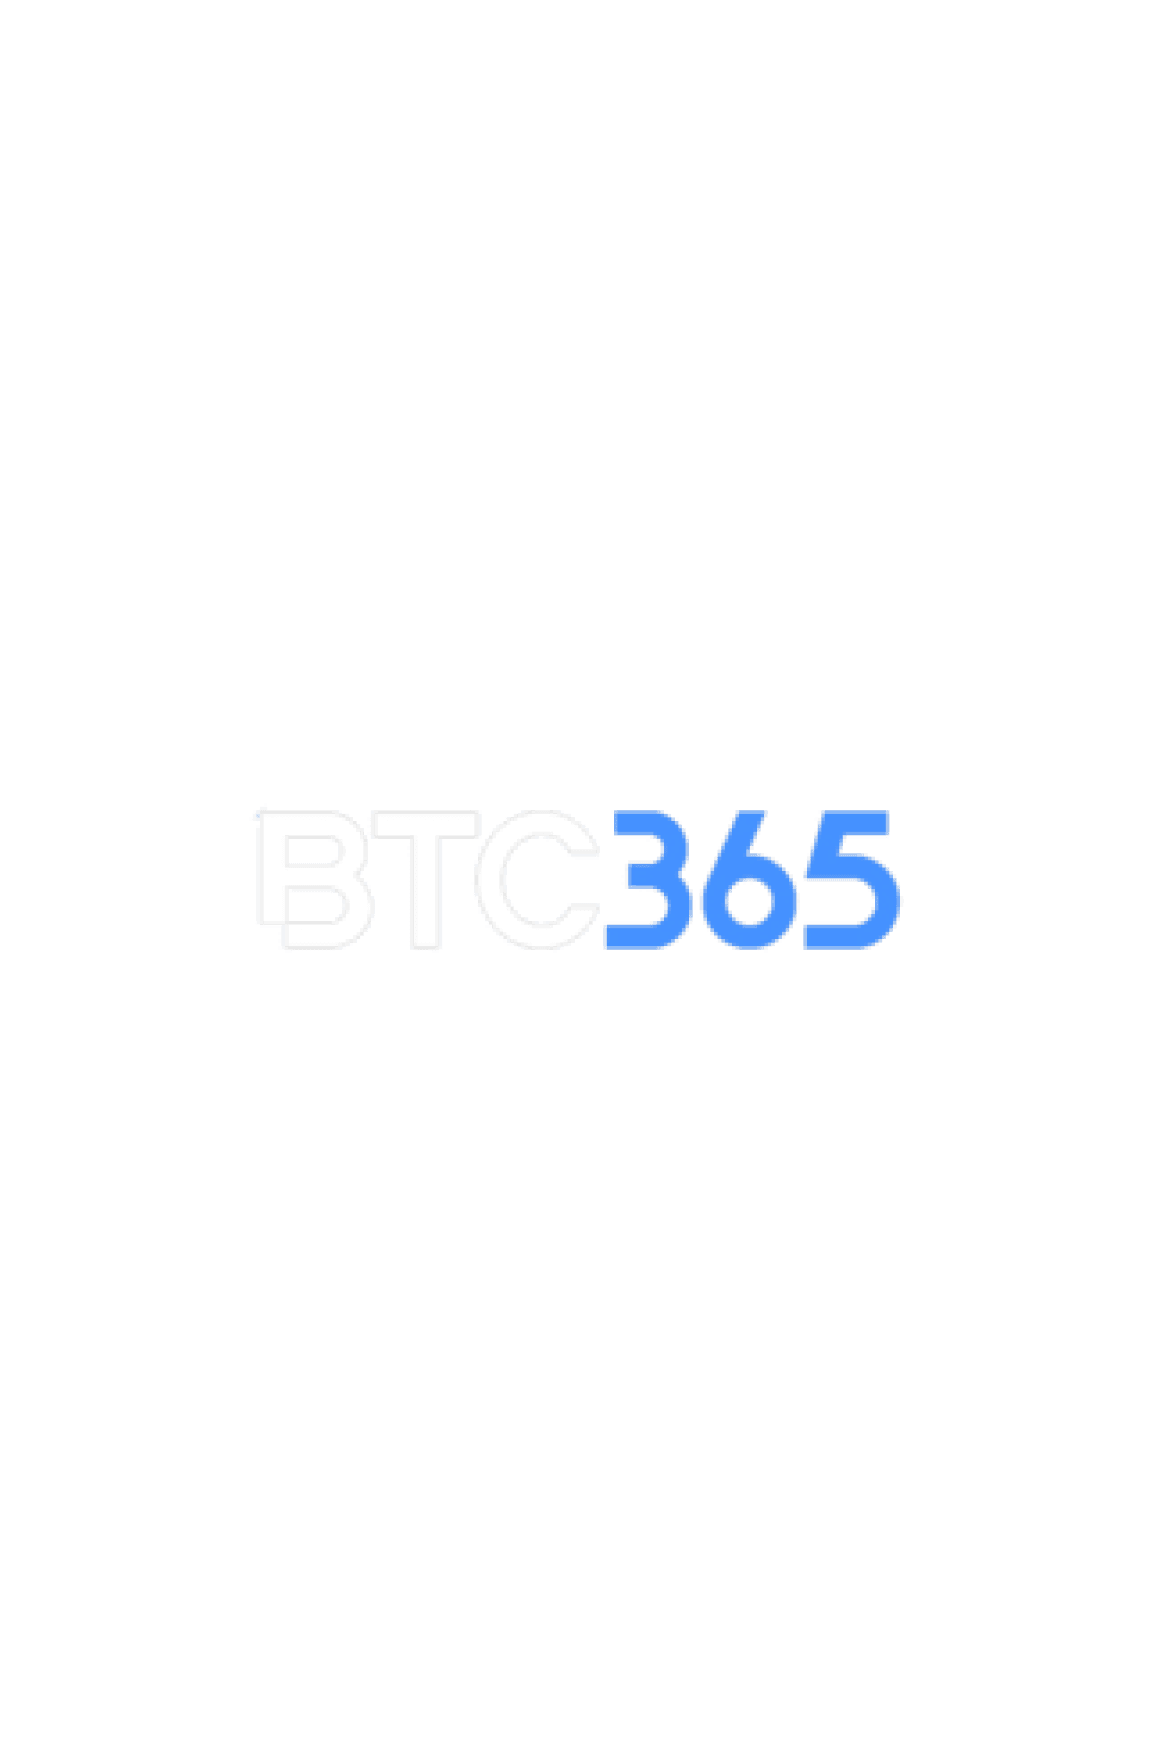 BTC365